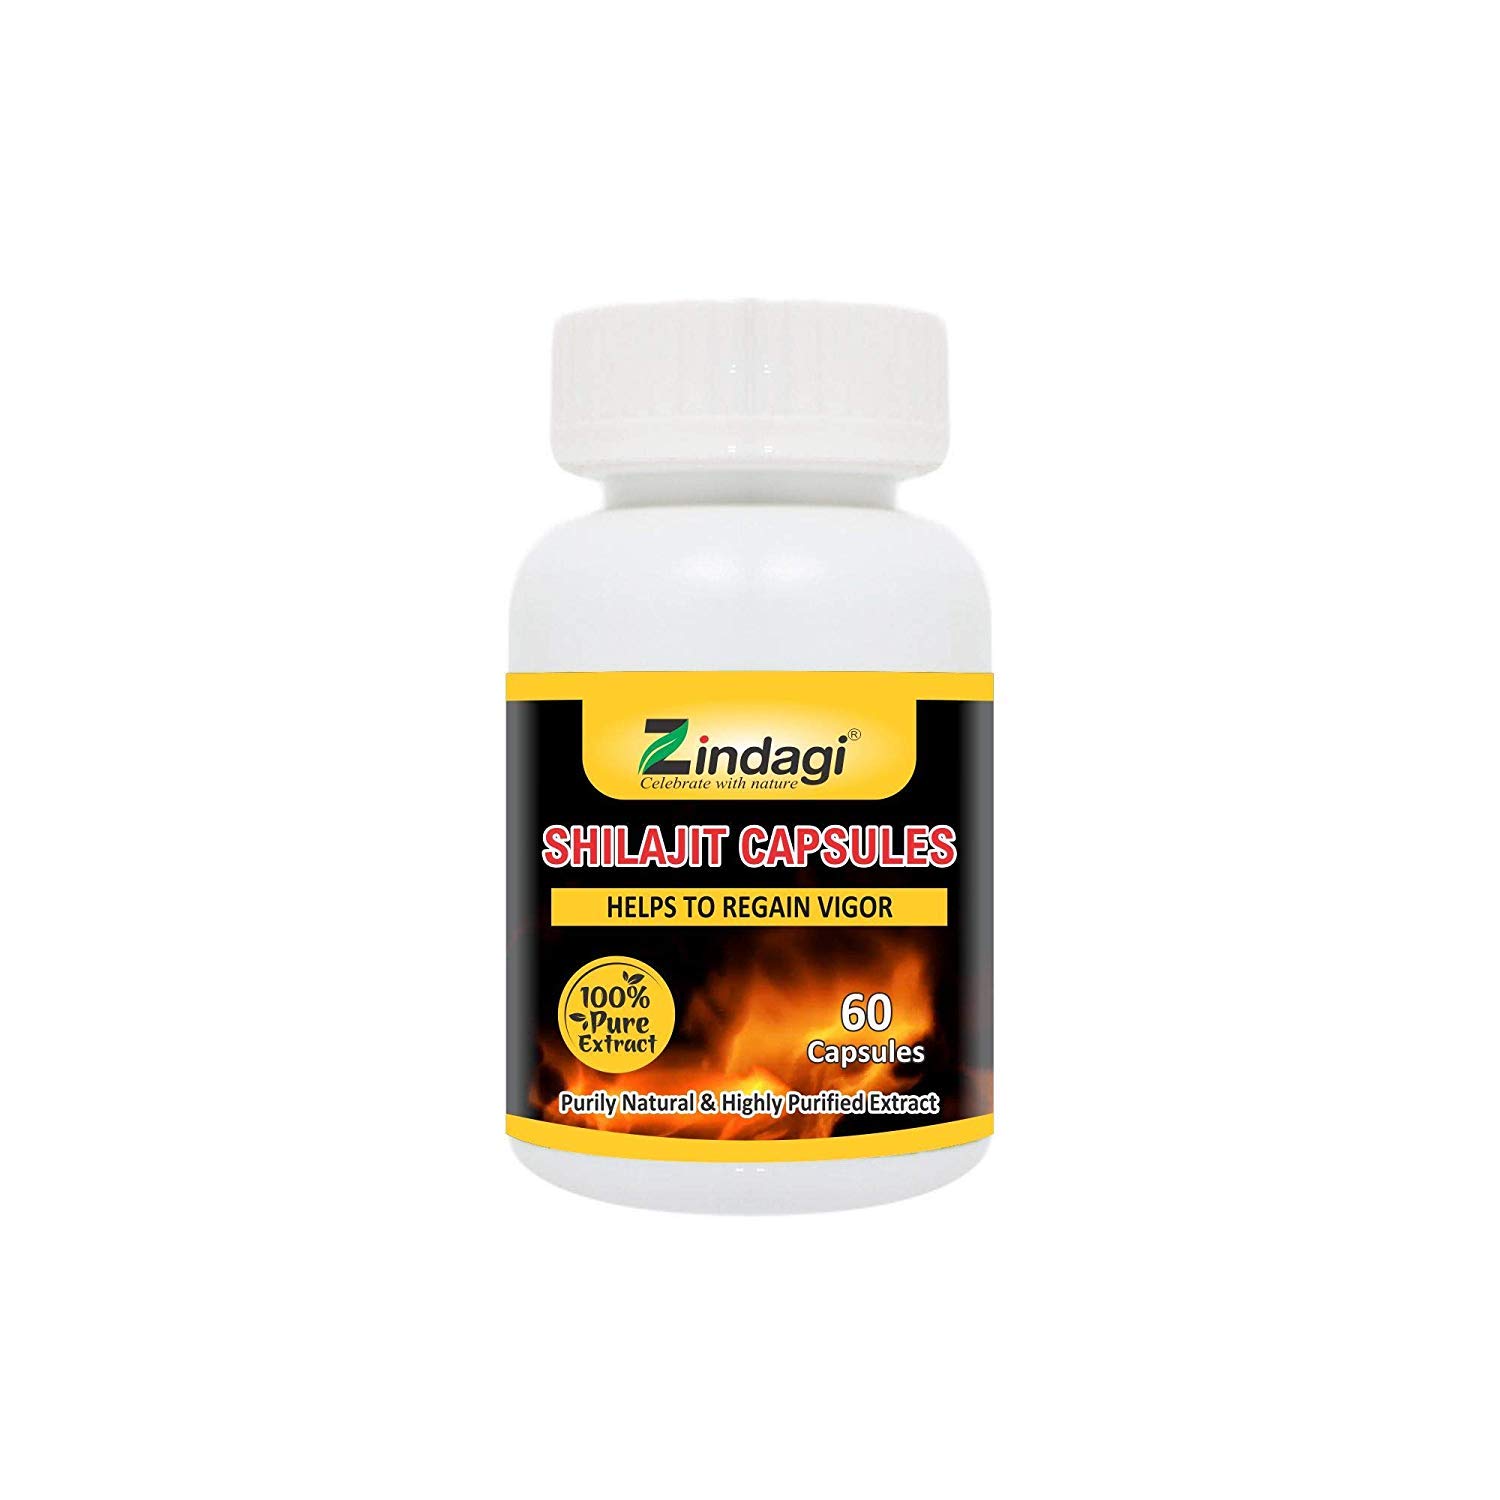 Zindagi Shilajit Extract Capsules - Strength & Stamina for Men - 100% Natural & Pure Shilajit Extract (60 Capsules)